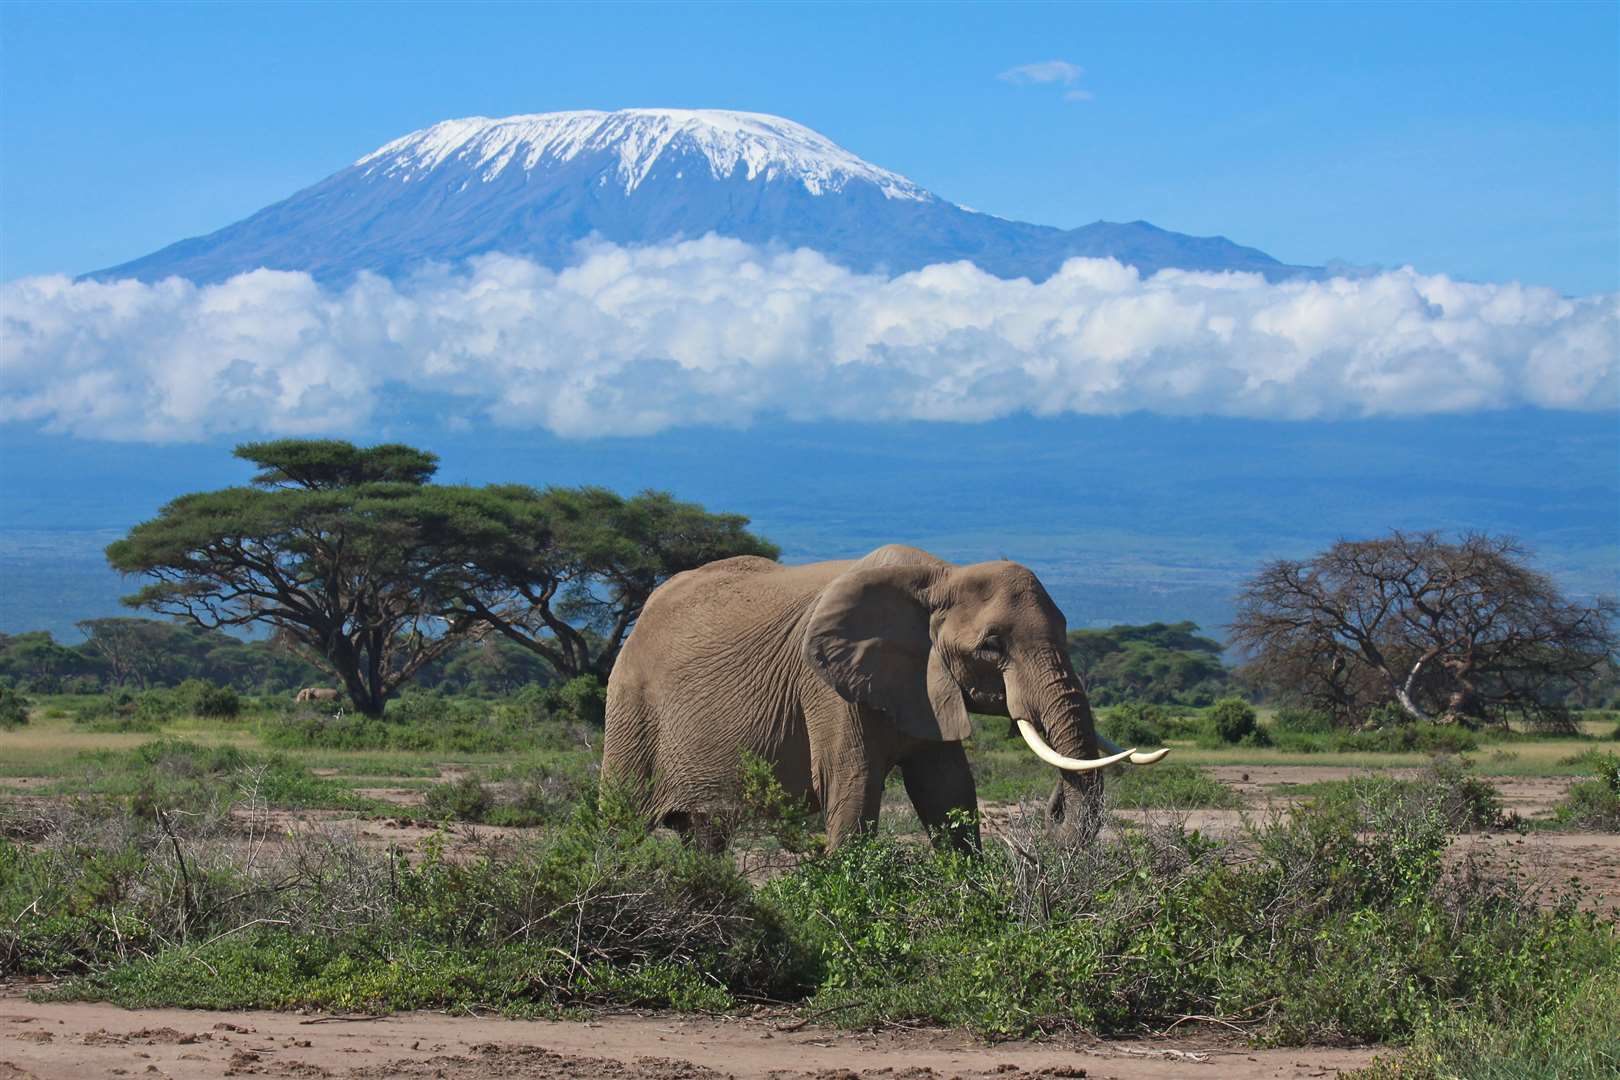 Mount Kilimanjaro in Kenya